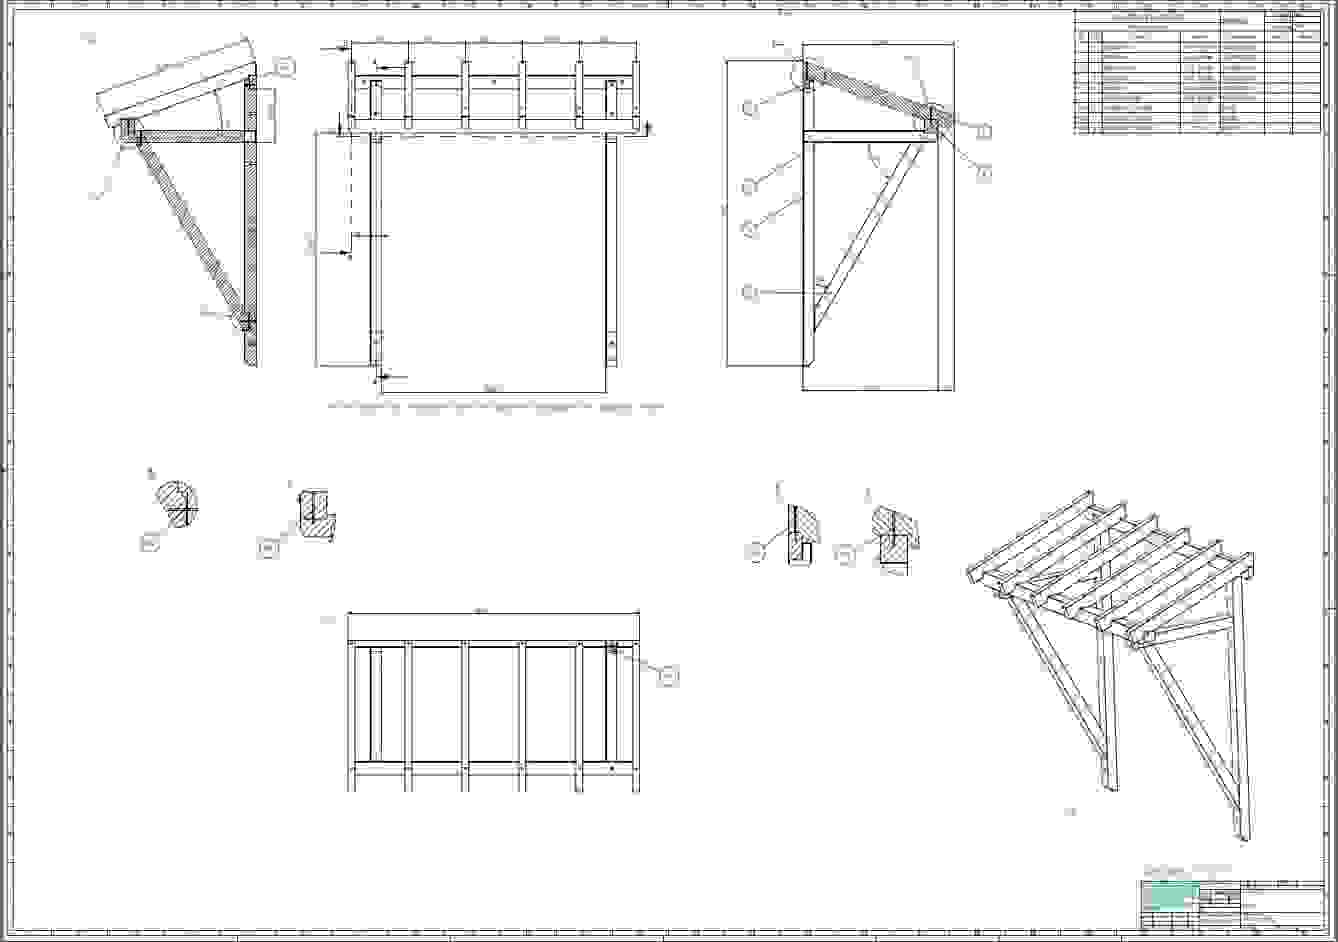 Vordach Hauseingang Holz Bauanleitung – Bvrao Ist Tolle Design Von von Vordach Selber Bauen Bauanleitung Bild